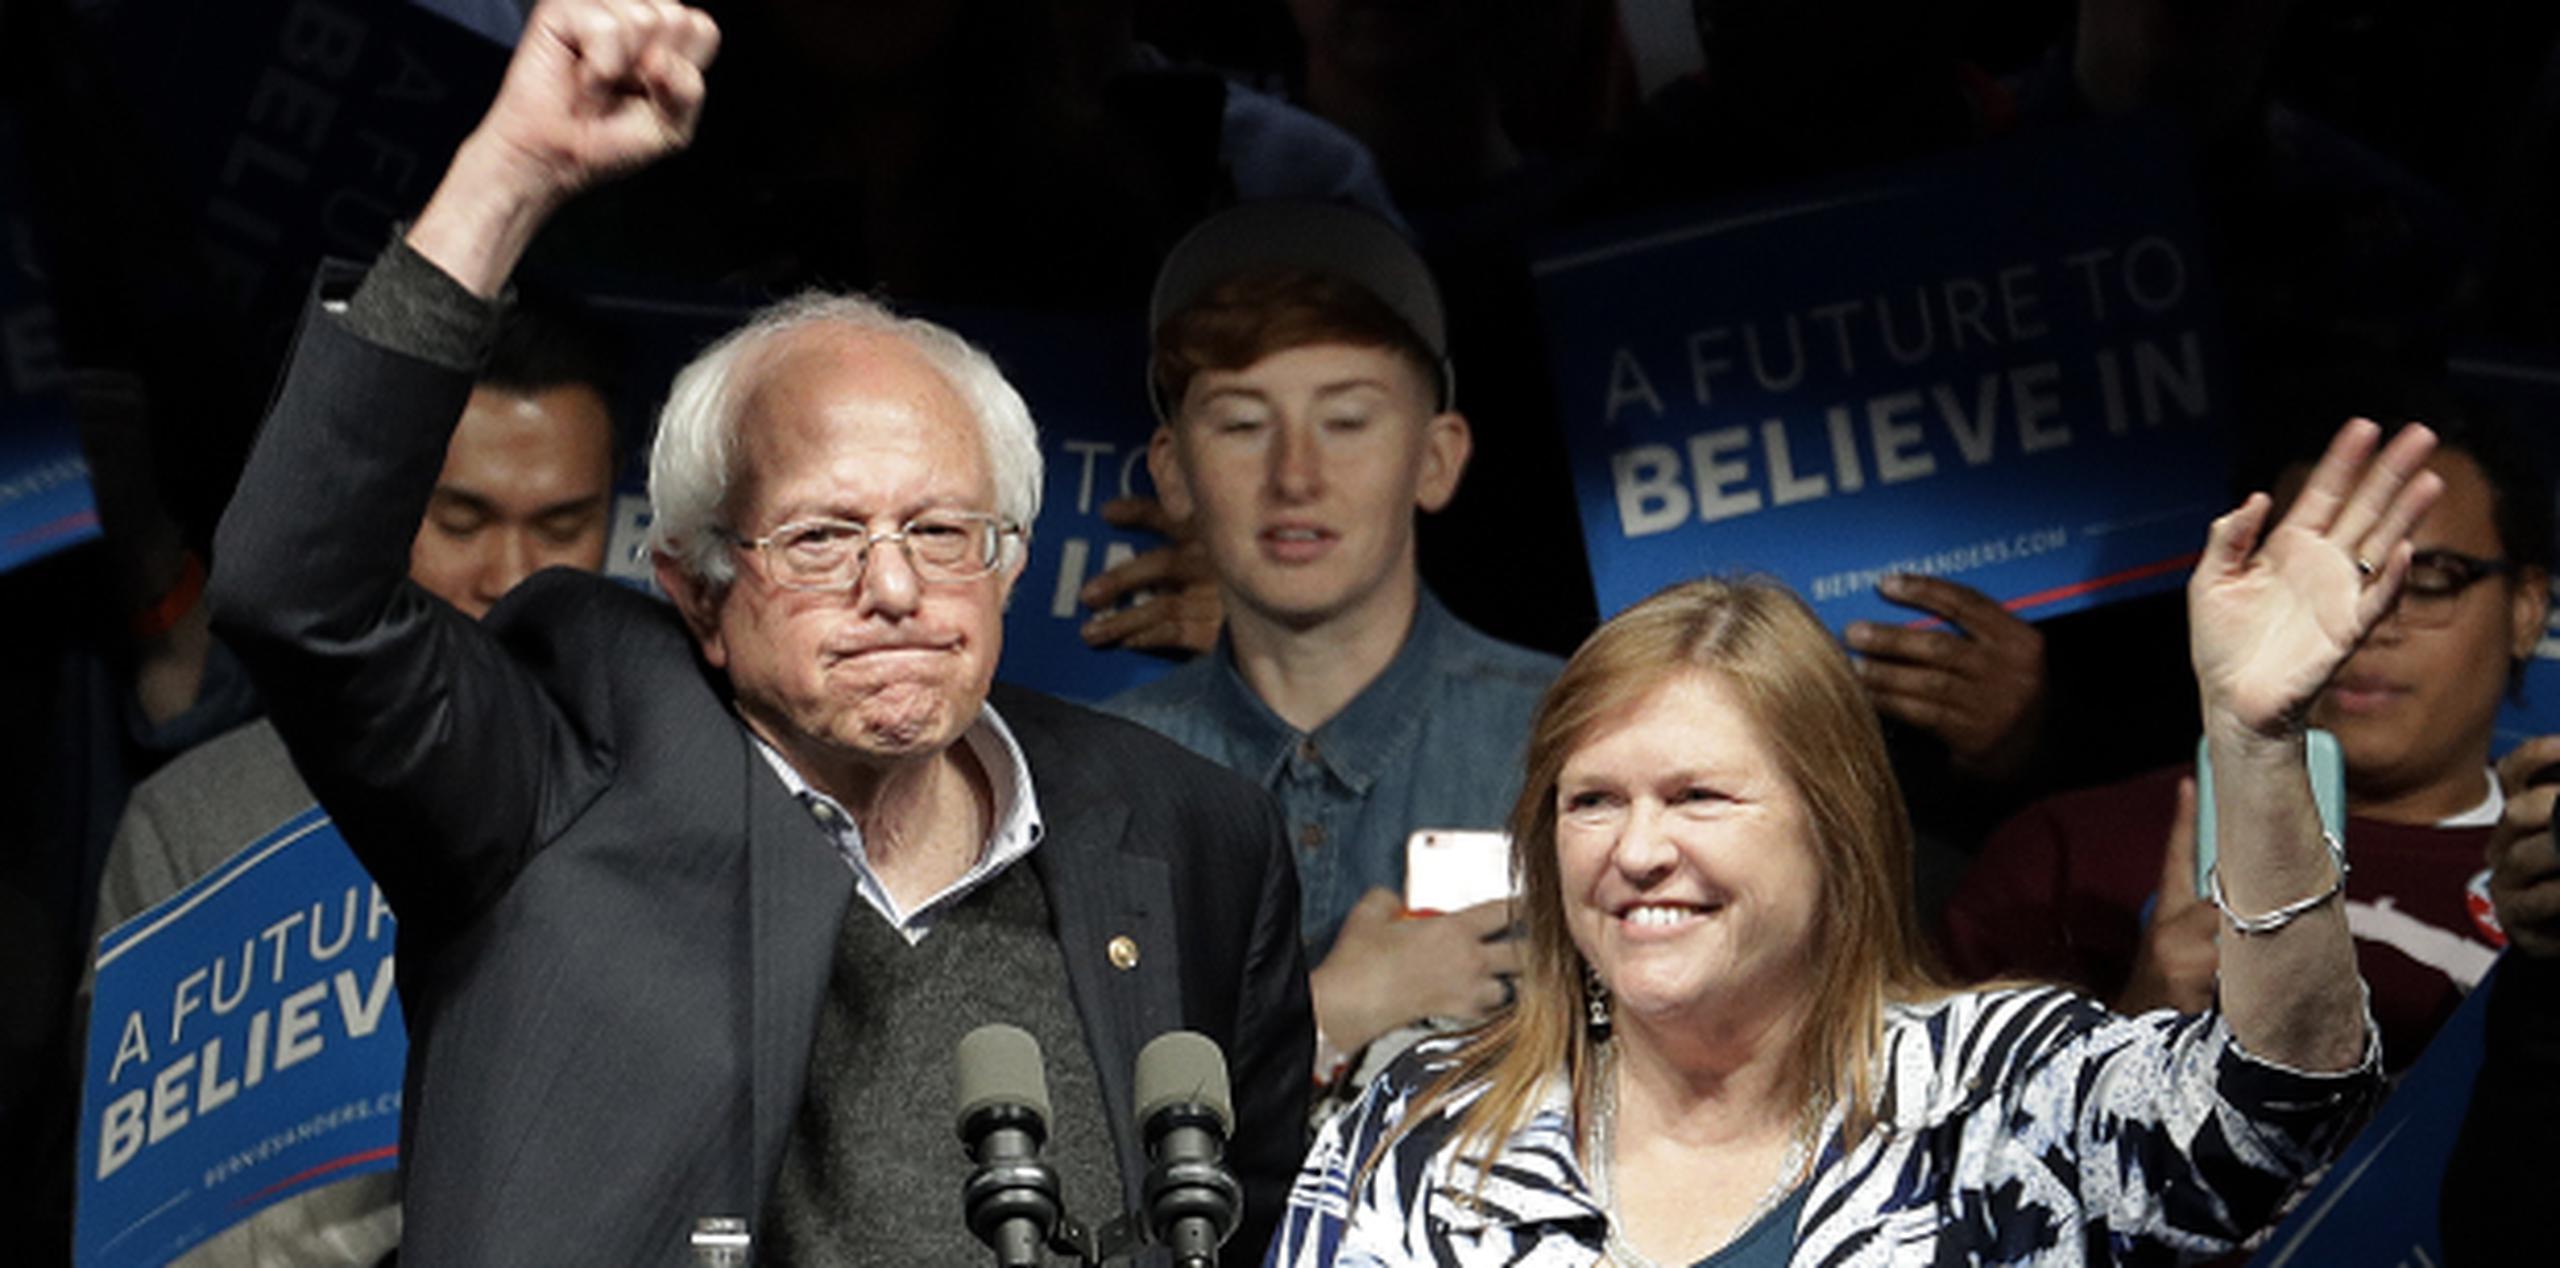 La victoria en Indiana le da a Bernie Sanders un nuevo impulso para mantener viva su aspiración de convertirse en el candidato presidencial demócrata. (AP/Charlie Riedel)
